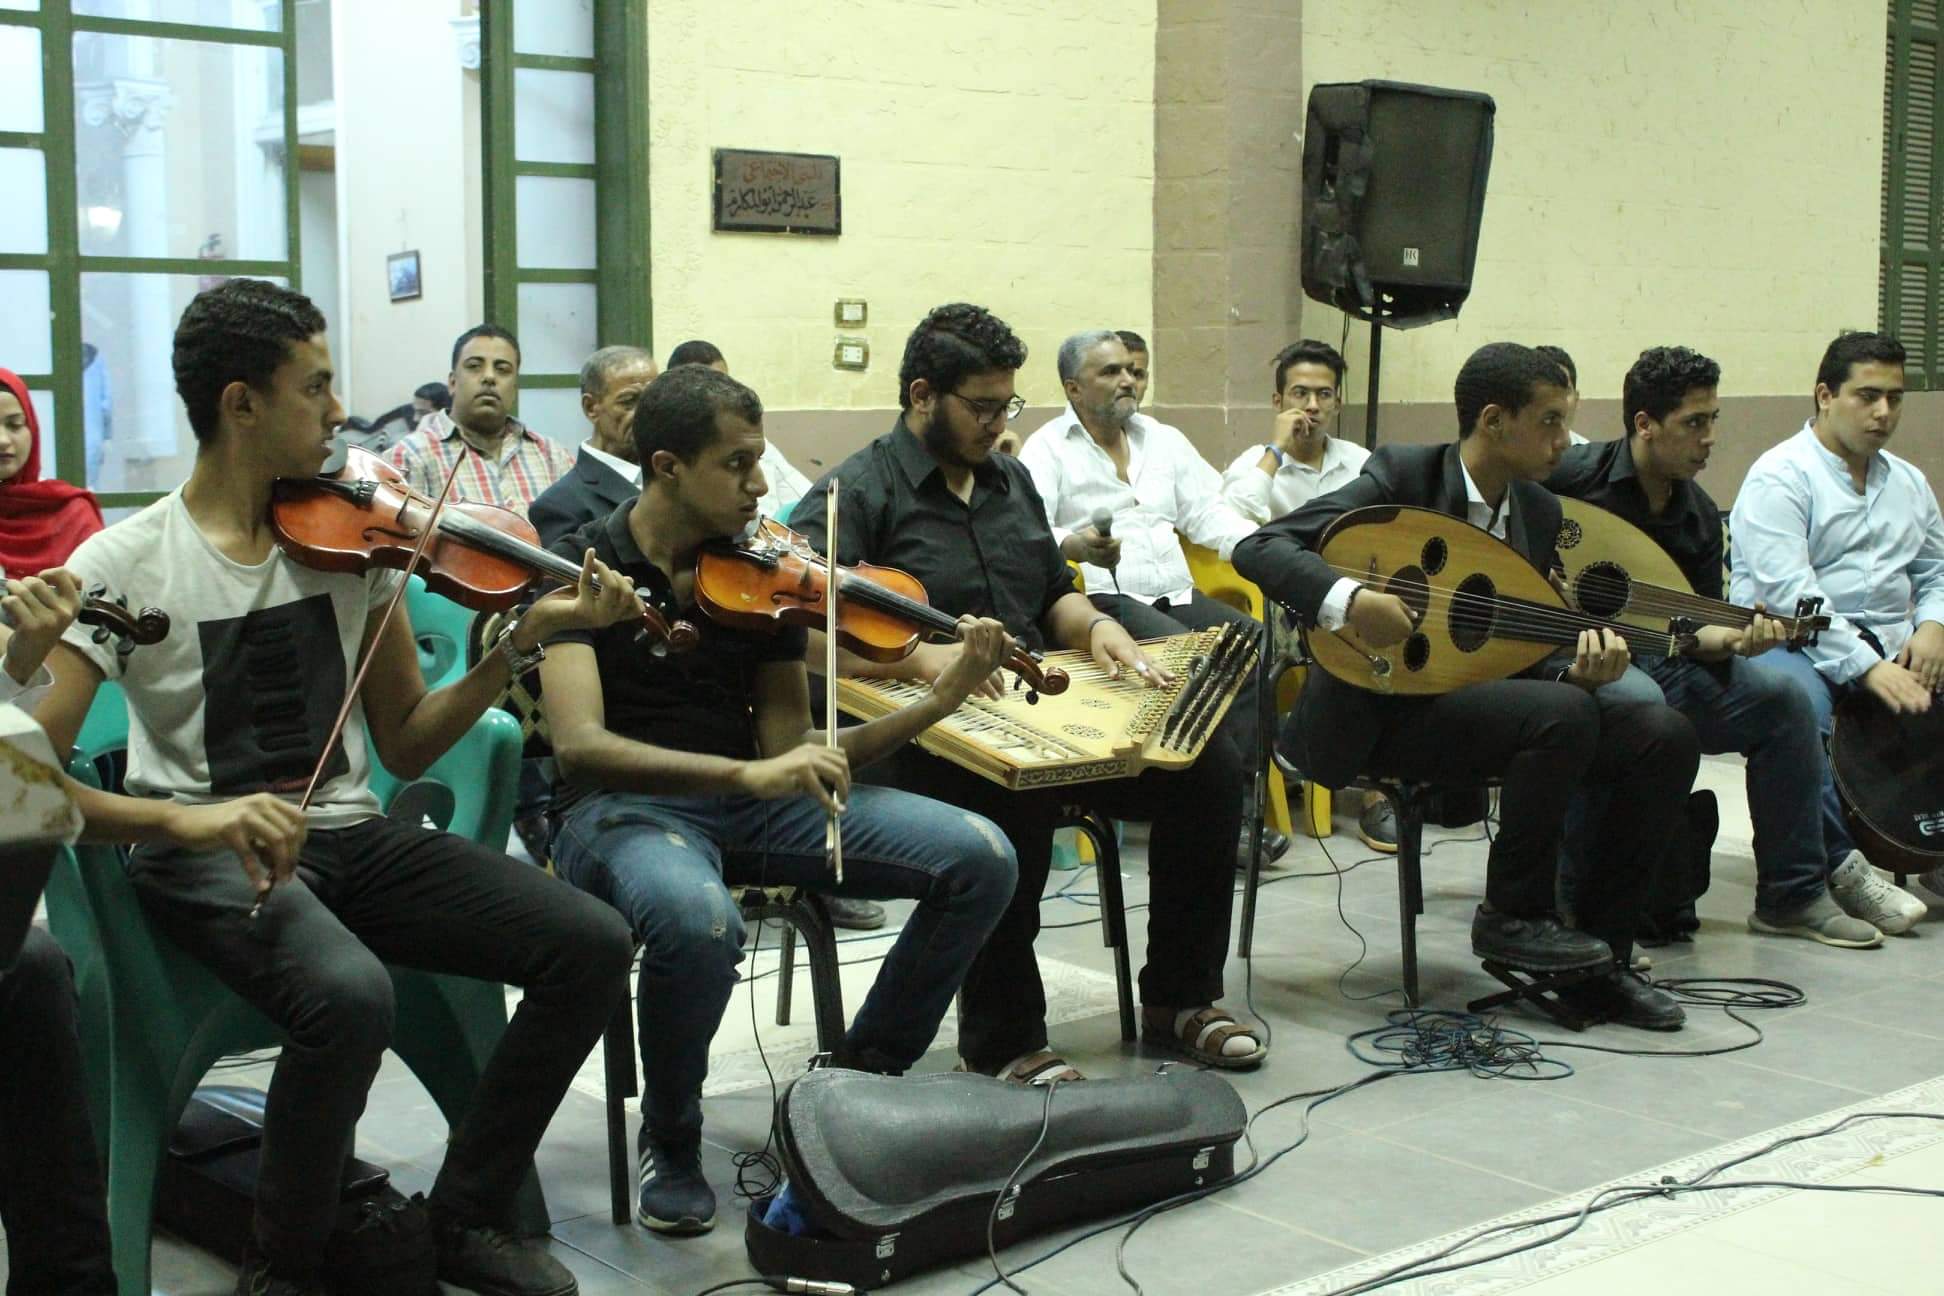   نادي المنيا يحتفل بذكرى نصر أكتوبر بحفلاً موسيقيًا أحياه قصر الثقافة و «بورسعيد للفنون الشعبية»